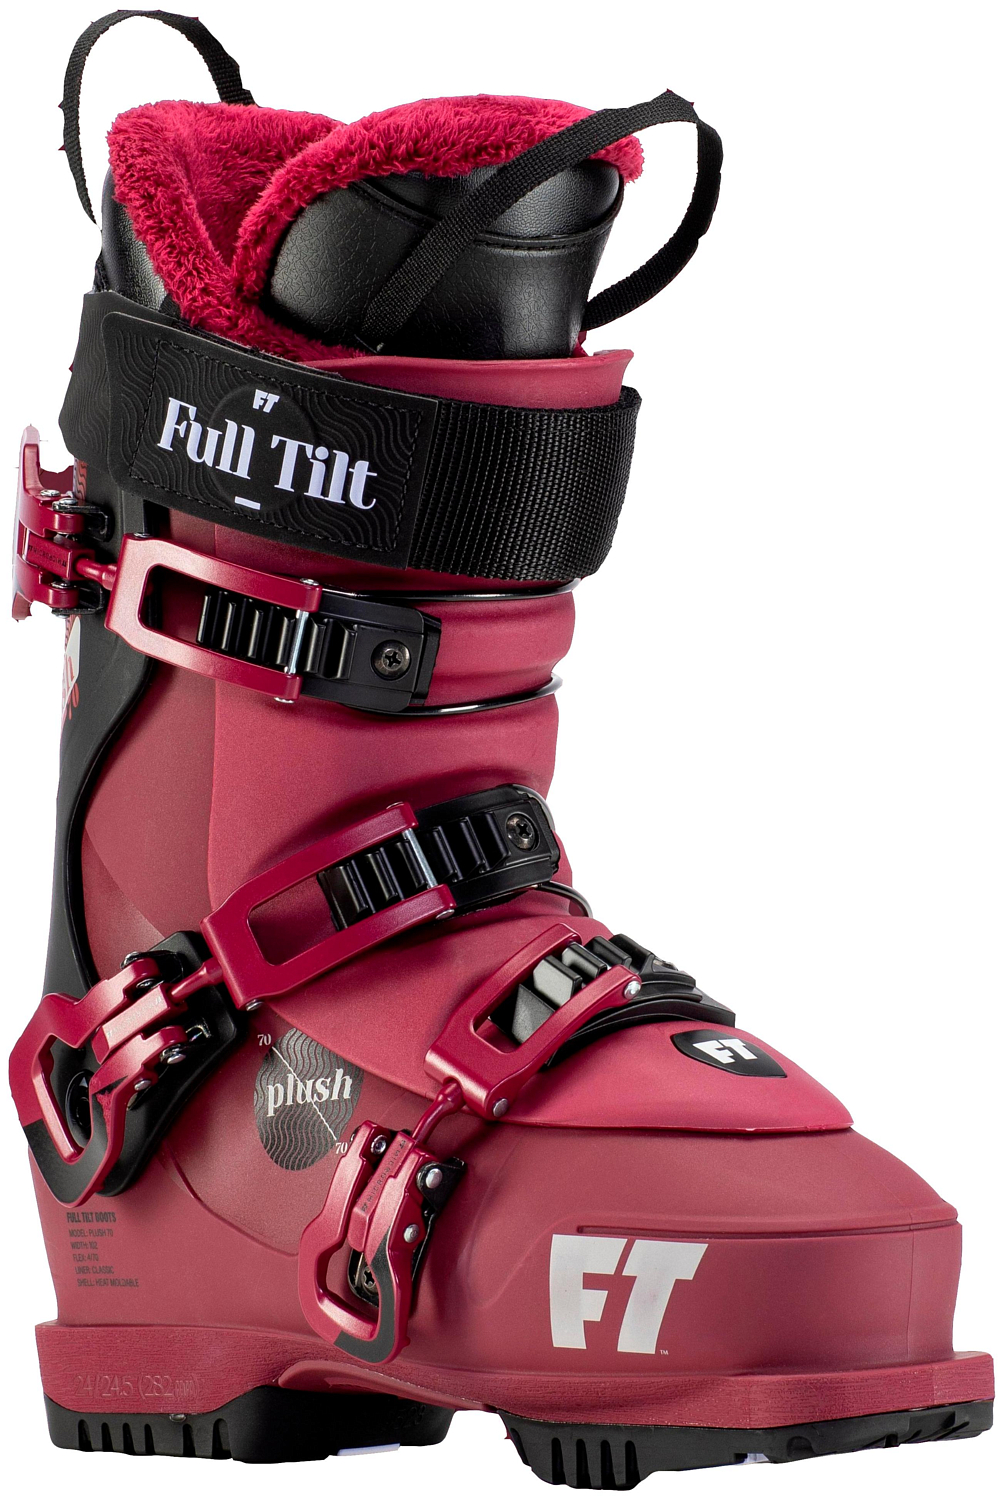 Горнолыжные ботинки Full Tilt Plush 70 Grip Walk